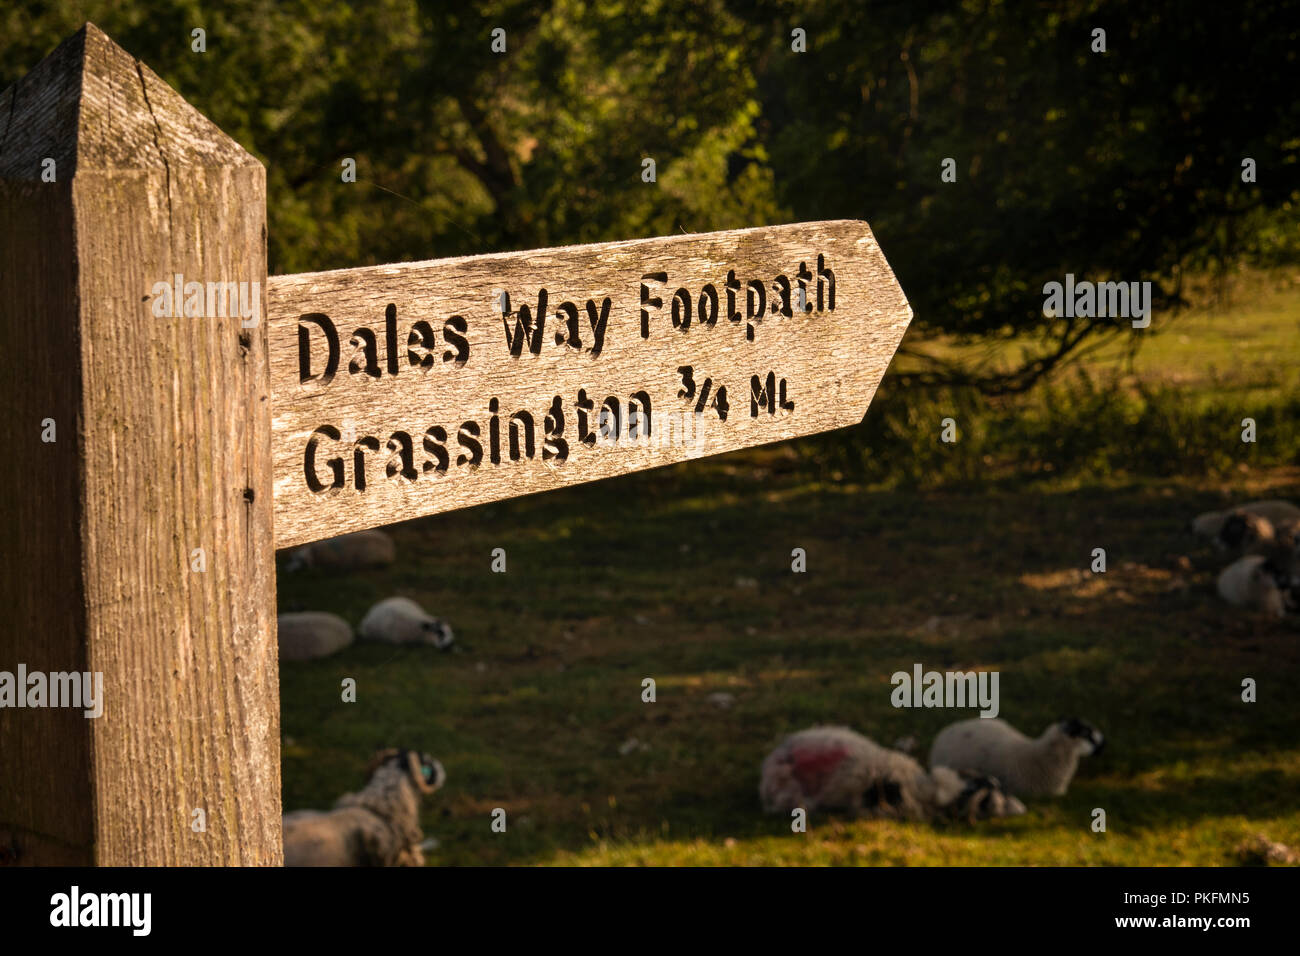 UK, Yorkshire, Wharfedale, Linton Falls, Dales en bois façon sentier public signe à Grassington Banque D'Images